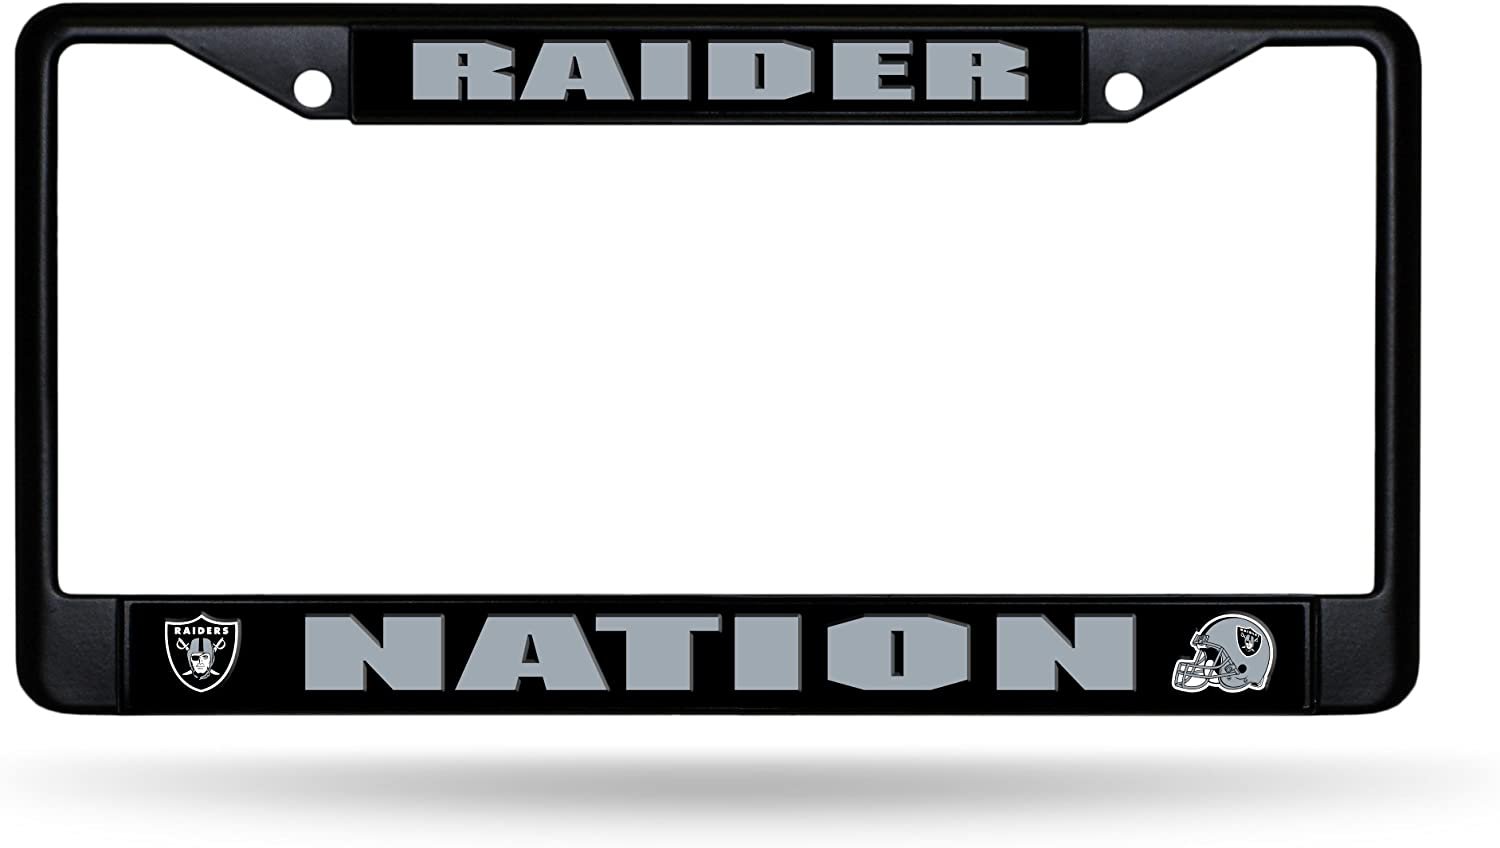 Las Vegas Raiders Raider Nation Premium Black Metal License Plate Frame Tag Cover, 12x6 Inch